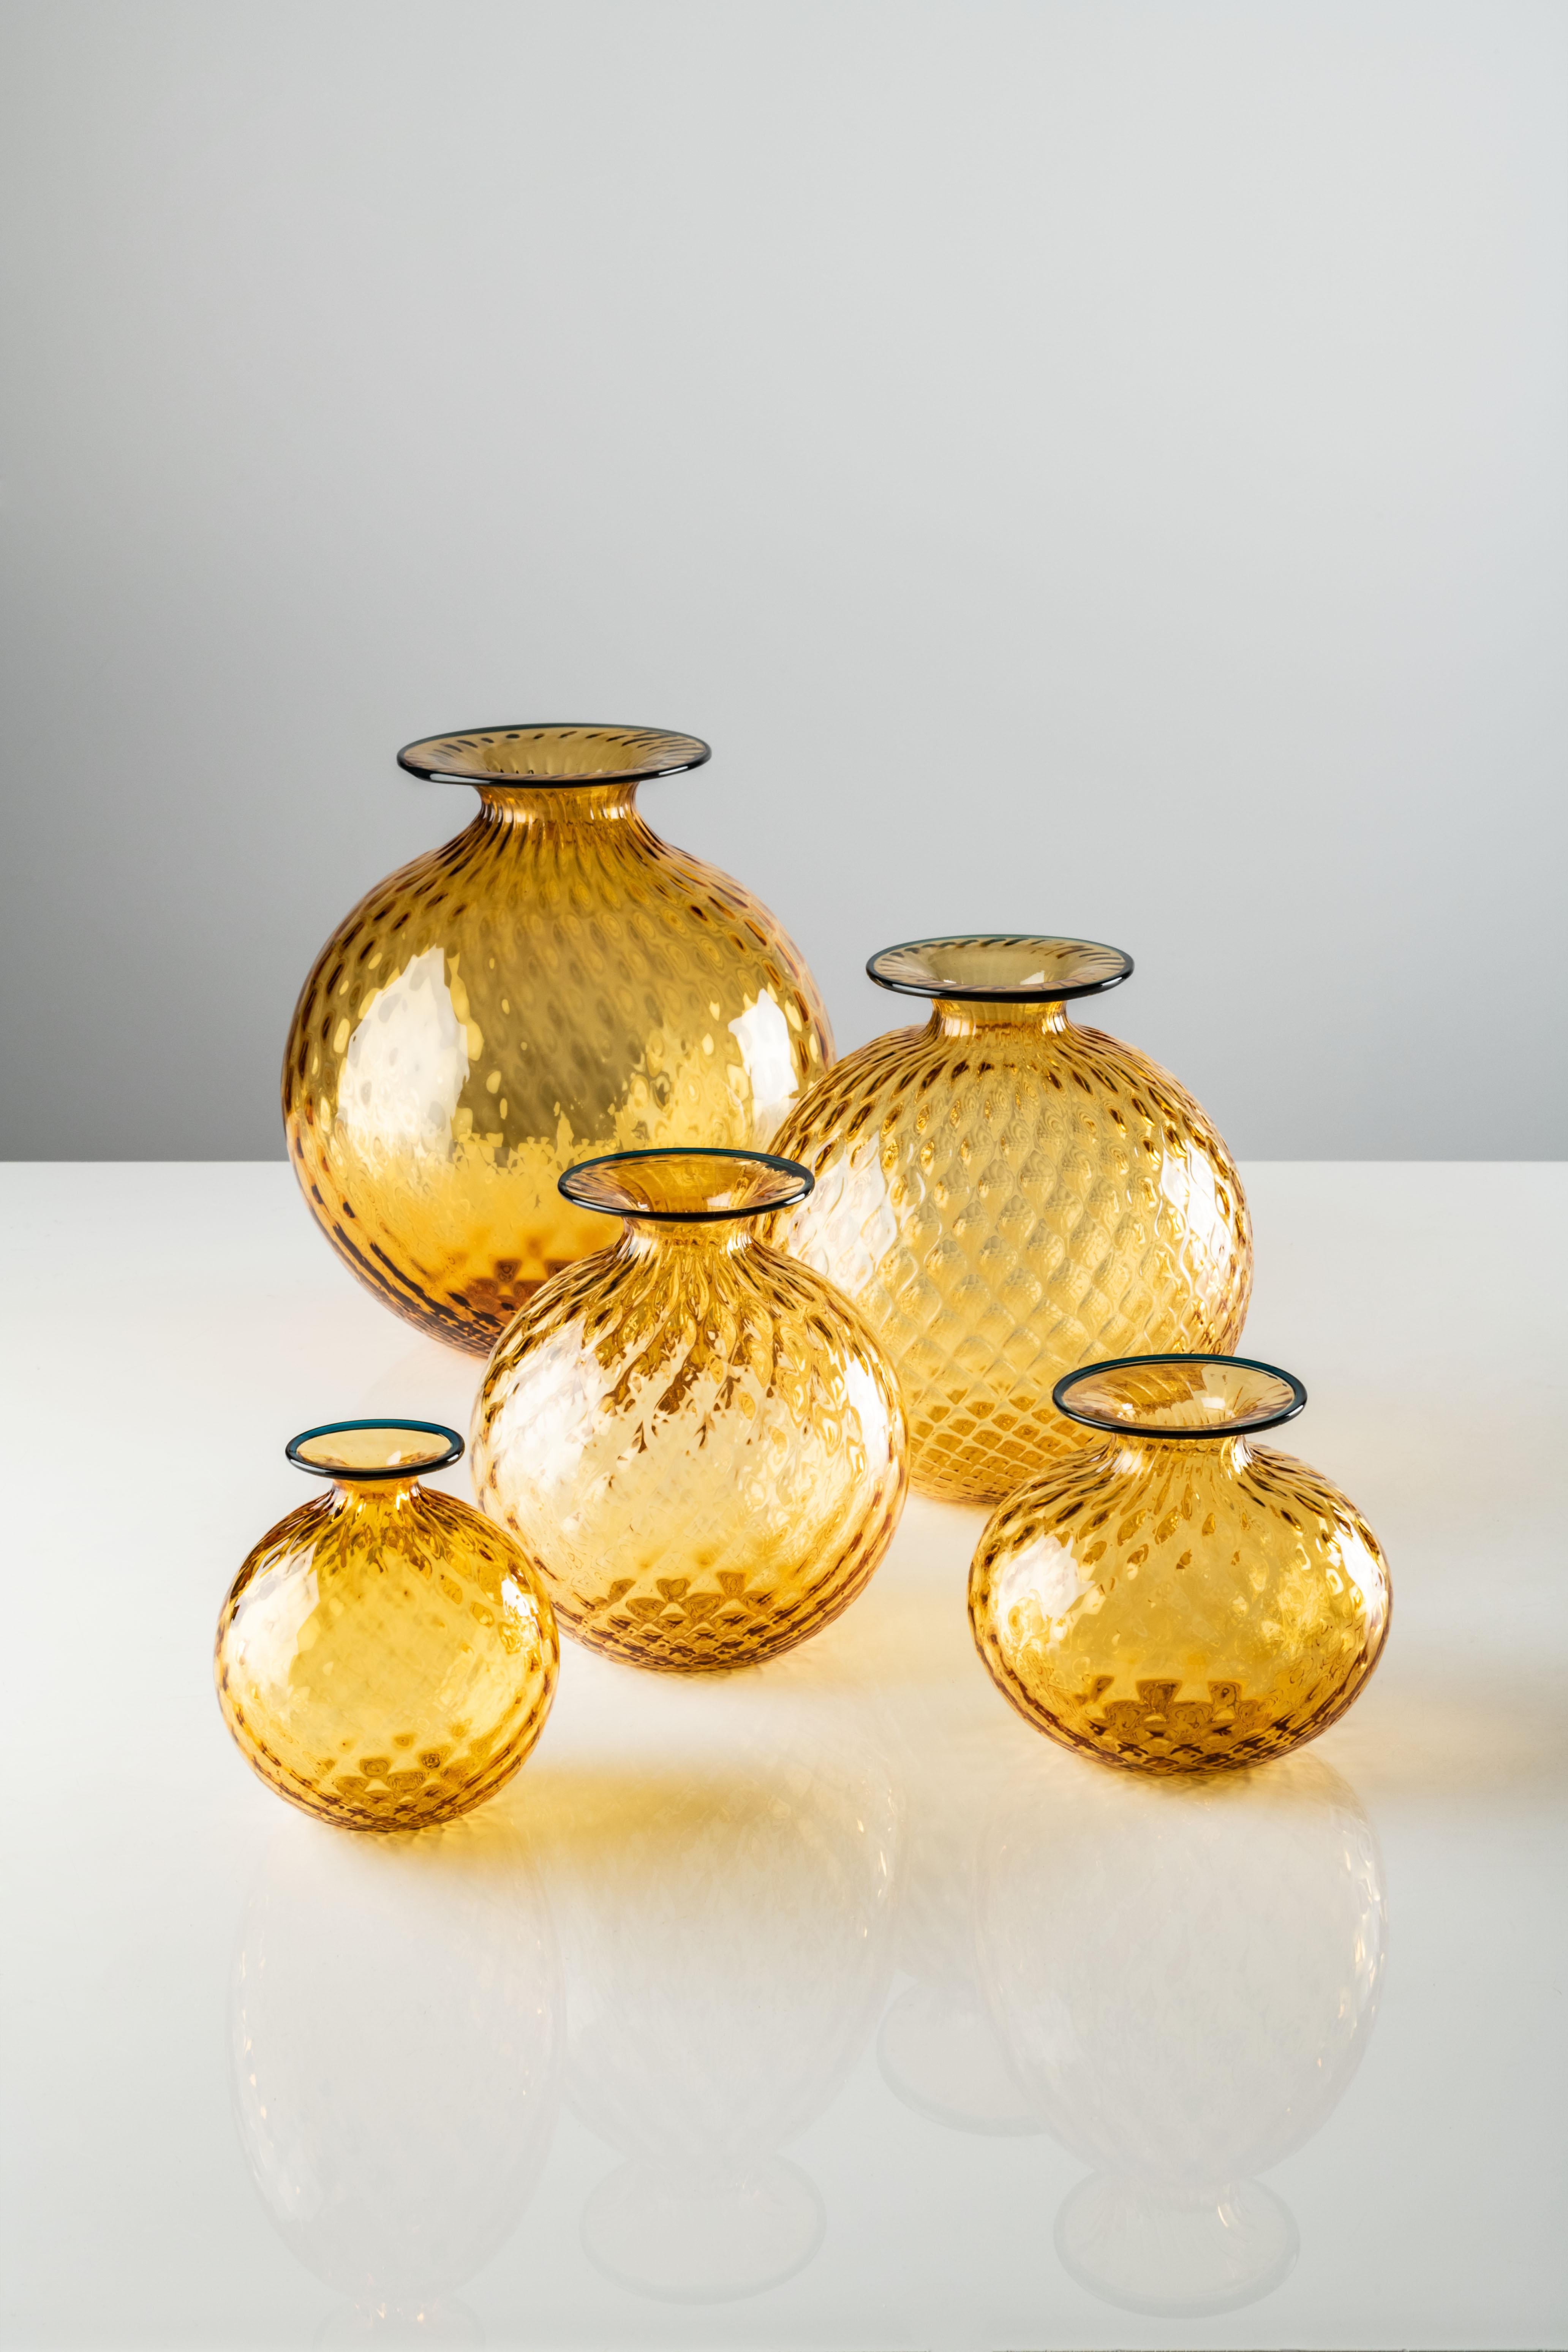 Vase Monofiore Balloton en verre Murano ambré de Venini. Il a l'air doux, mais il ne l'est pas ; c'est du verre. L'illusion d'optique de Monofiori de Venini de 1970 réside dans son nom : Balloton, une technique spéciale qui confère à la surface un